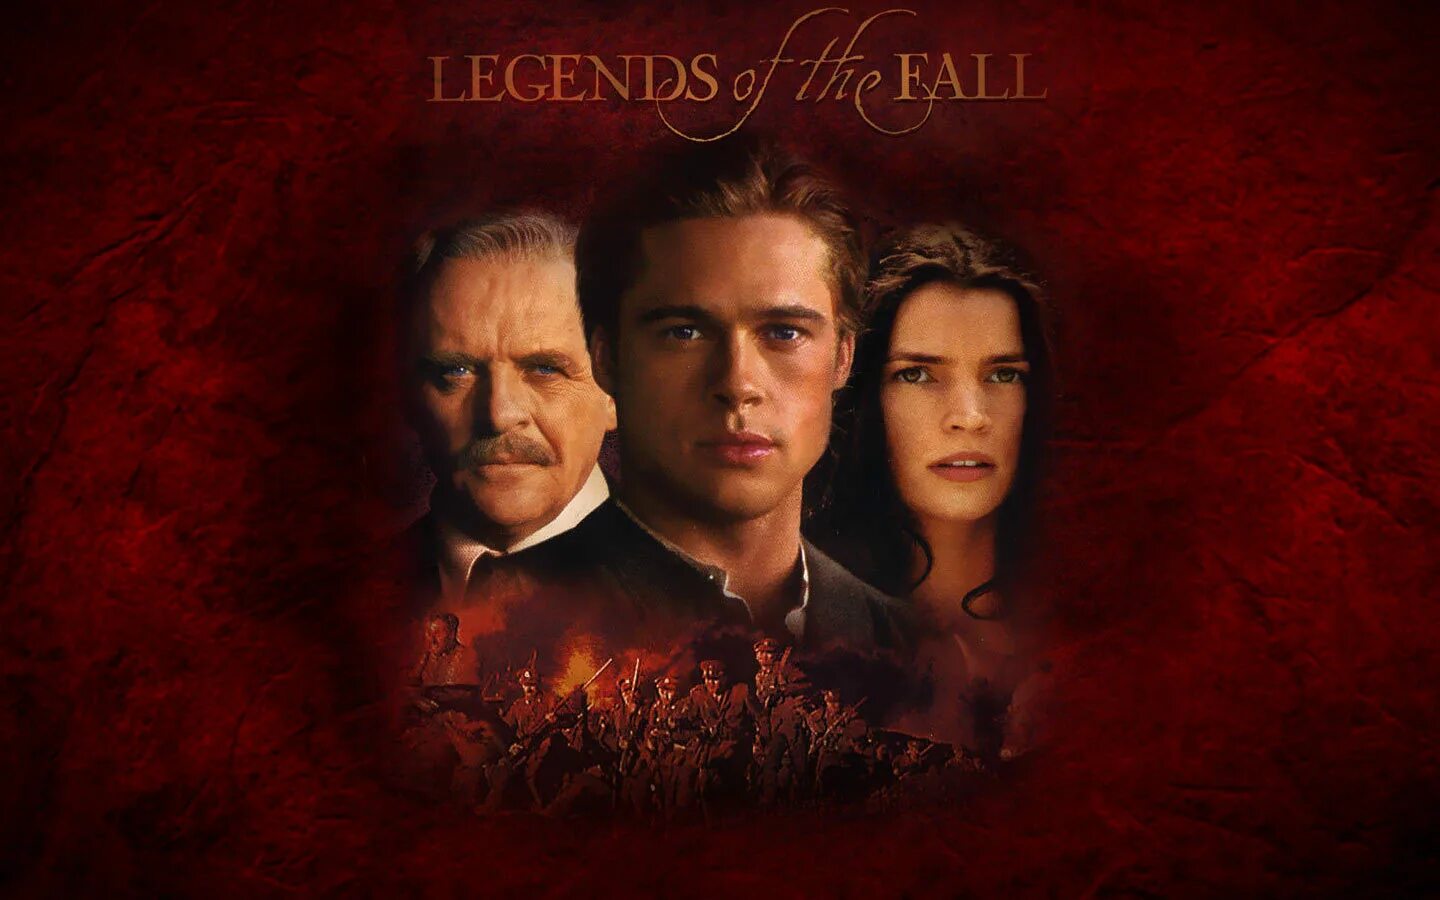 Брэд питт осень. Постеры легенды осени - Legends of the Fall (1994).